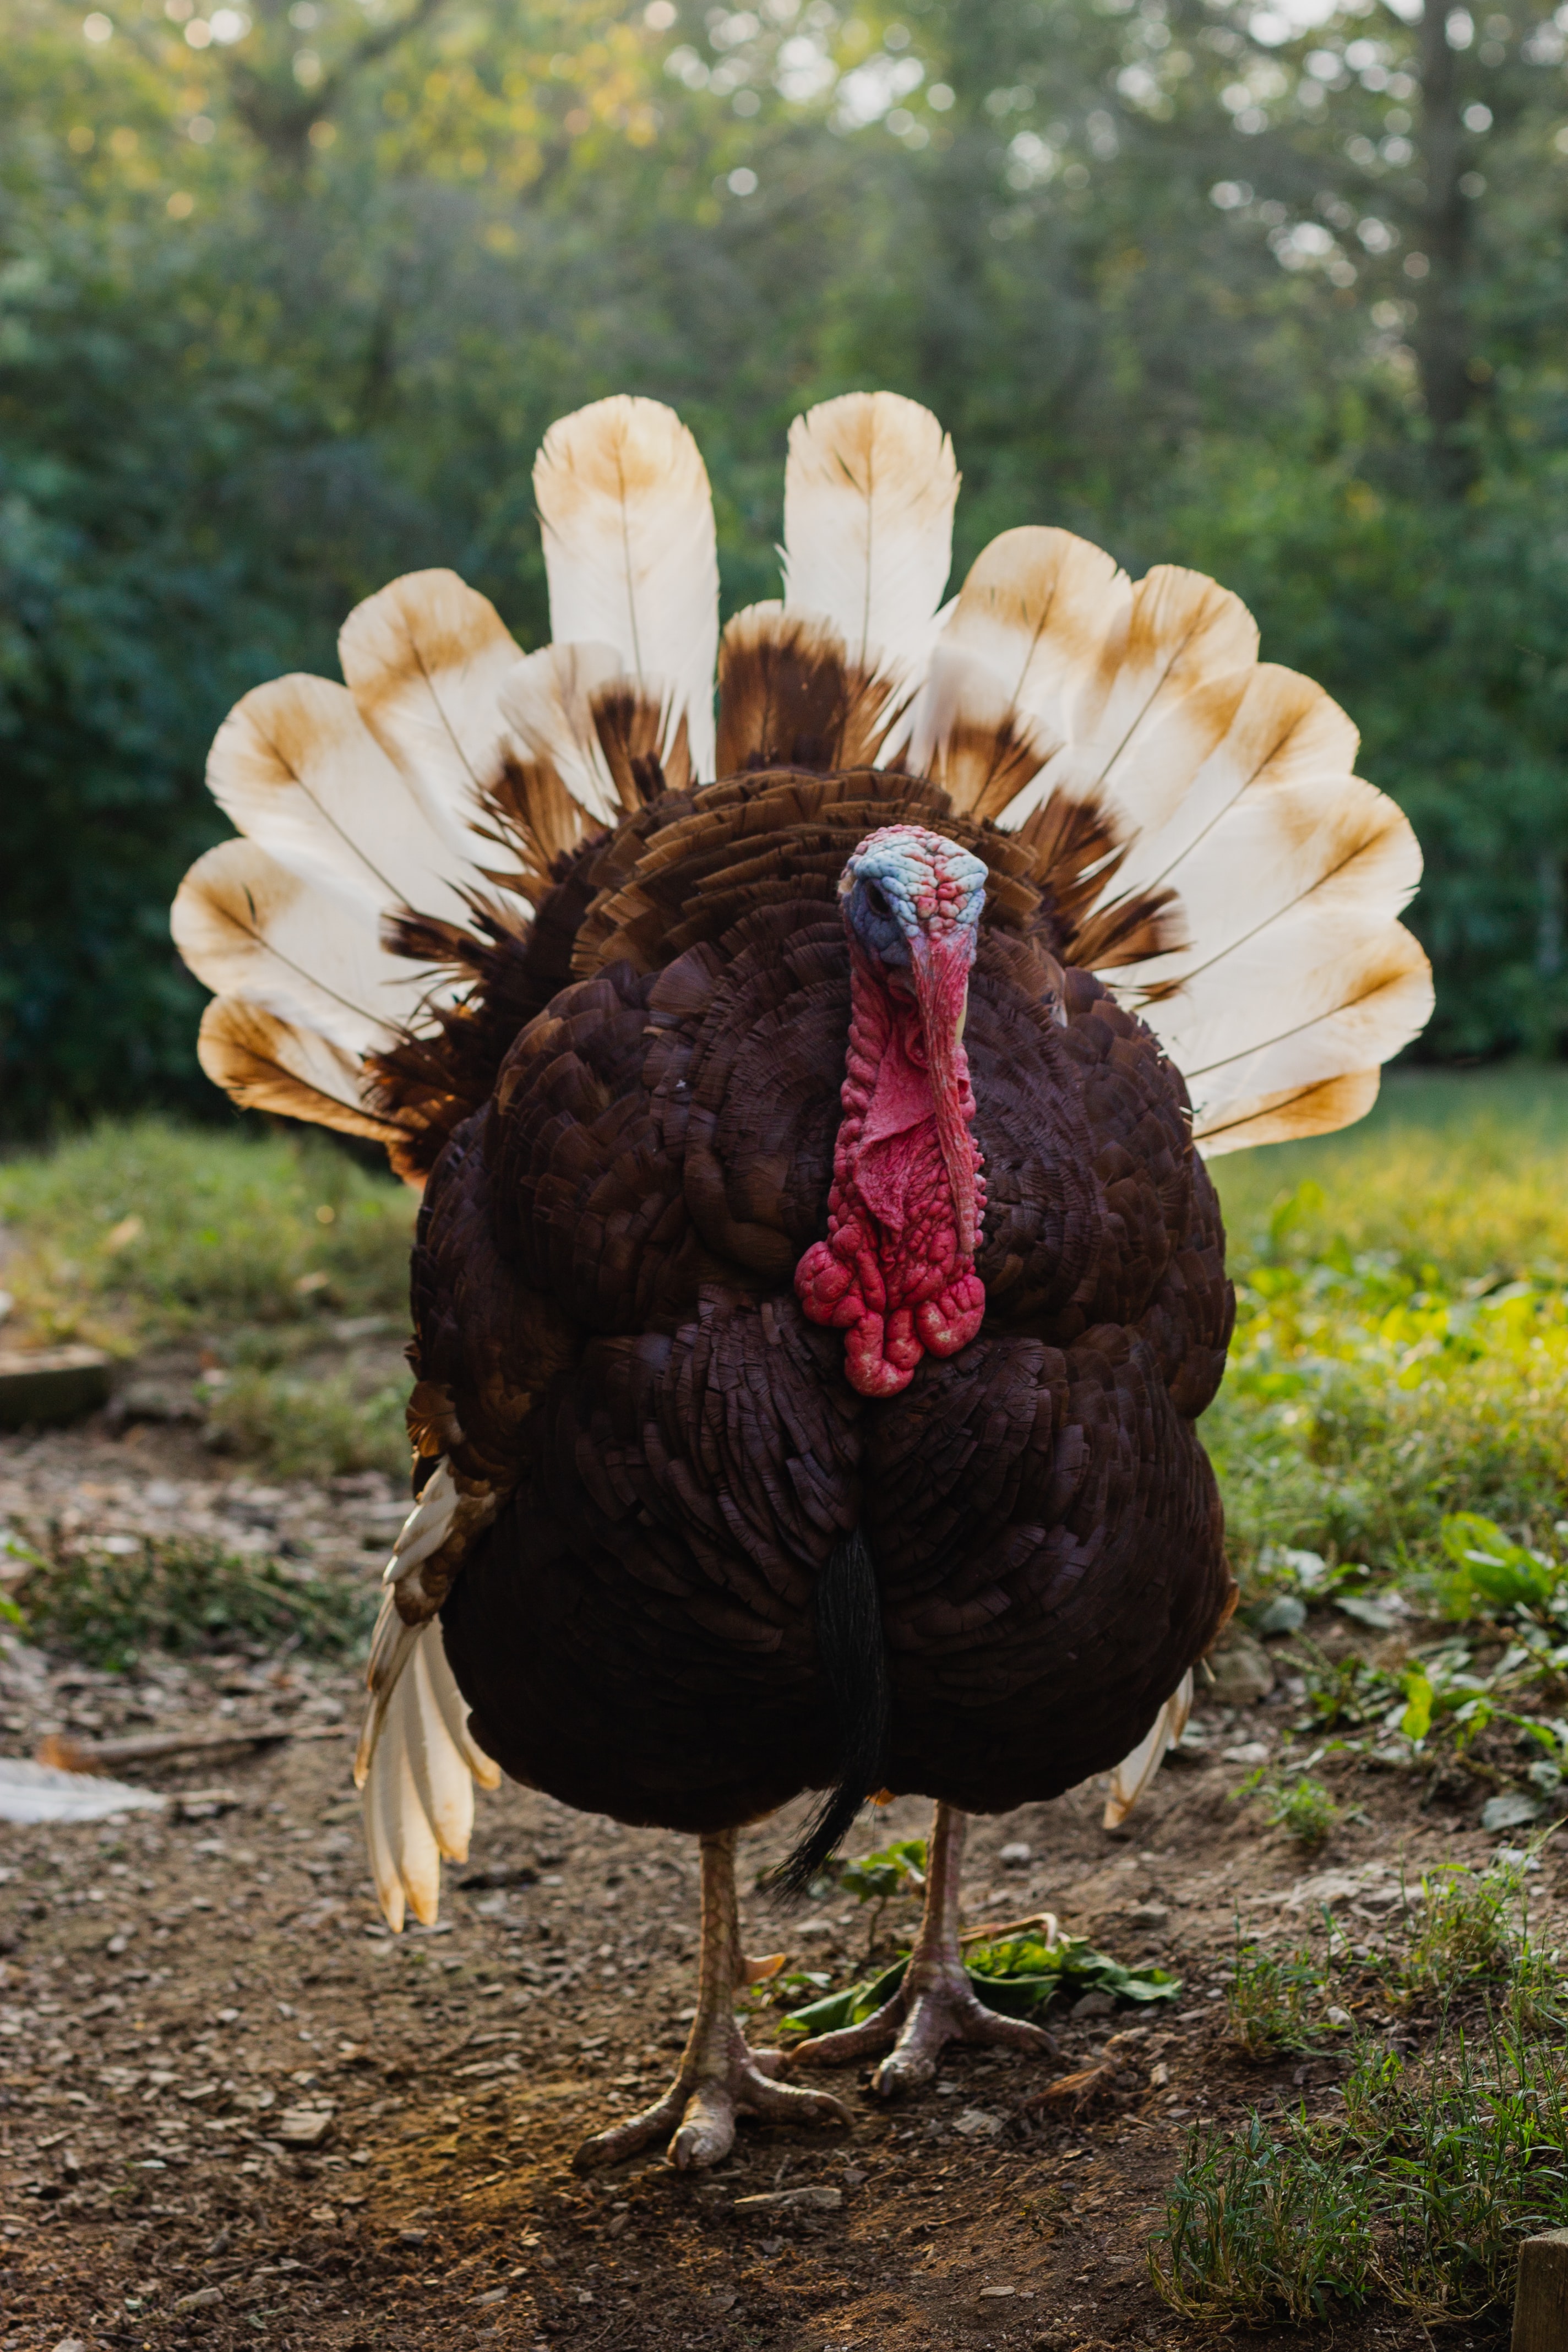 Male turkey in a field.